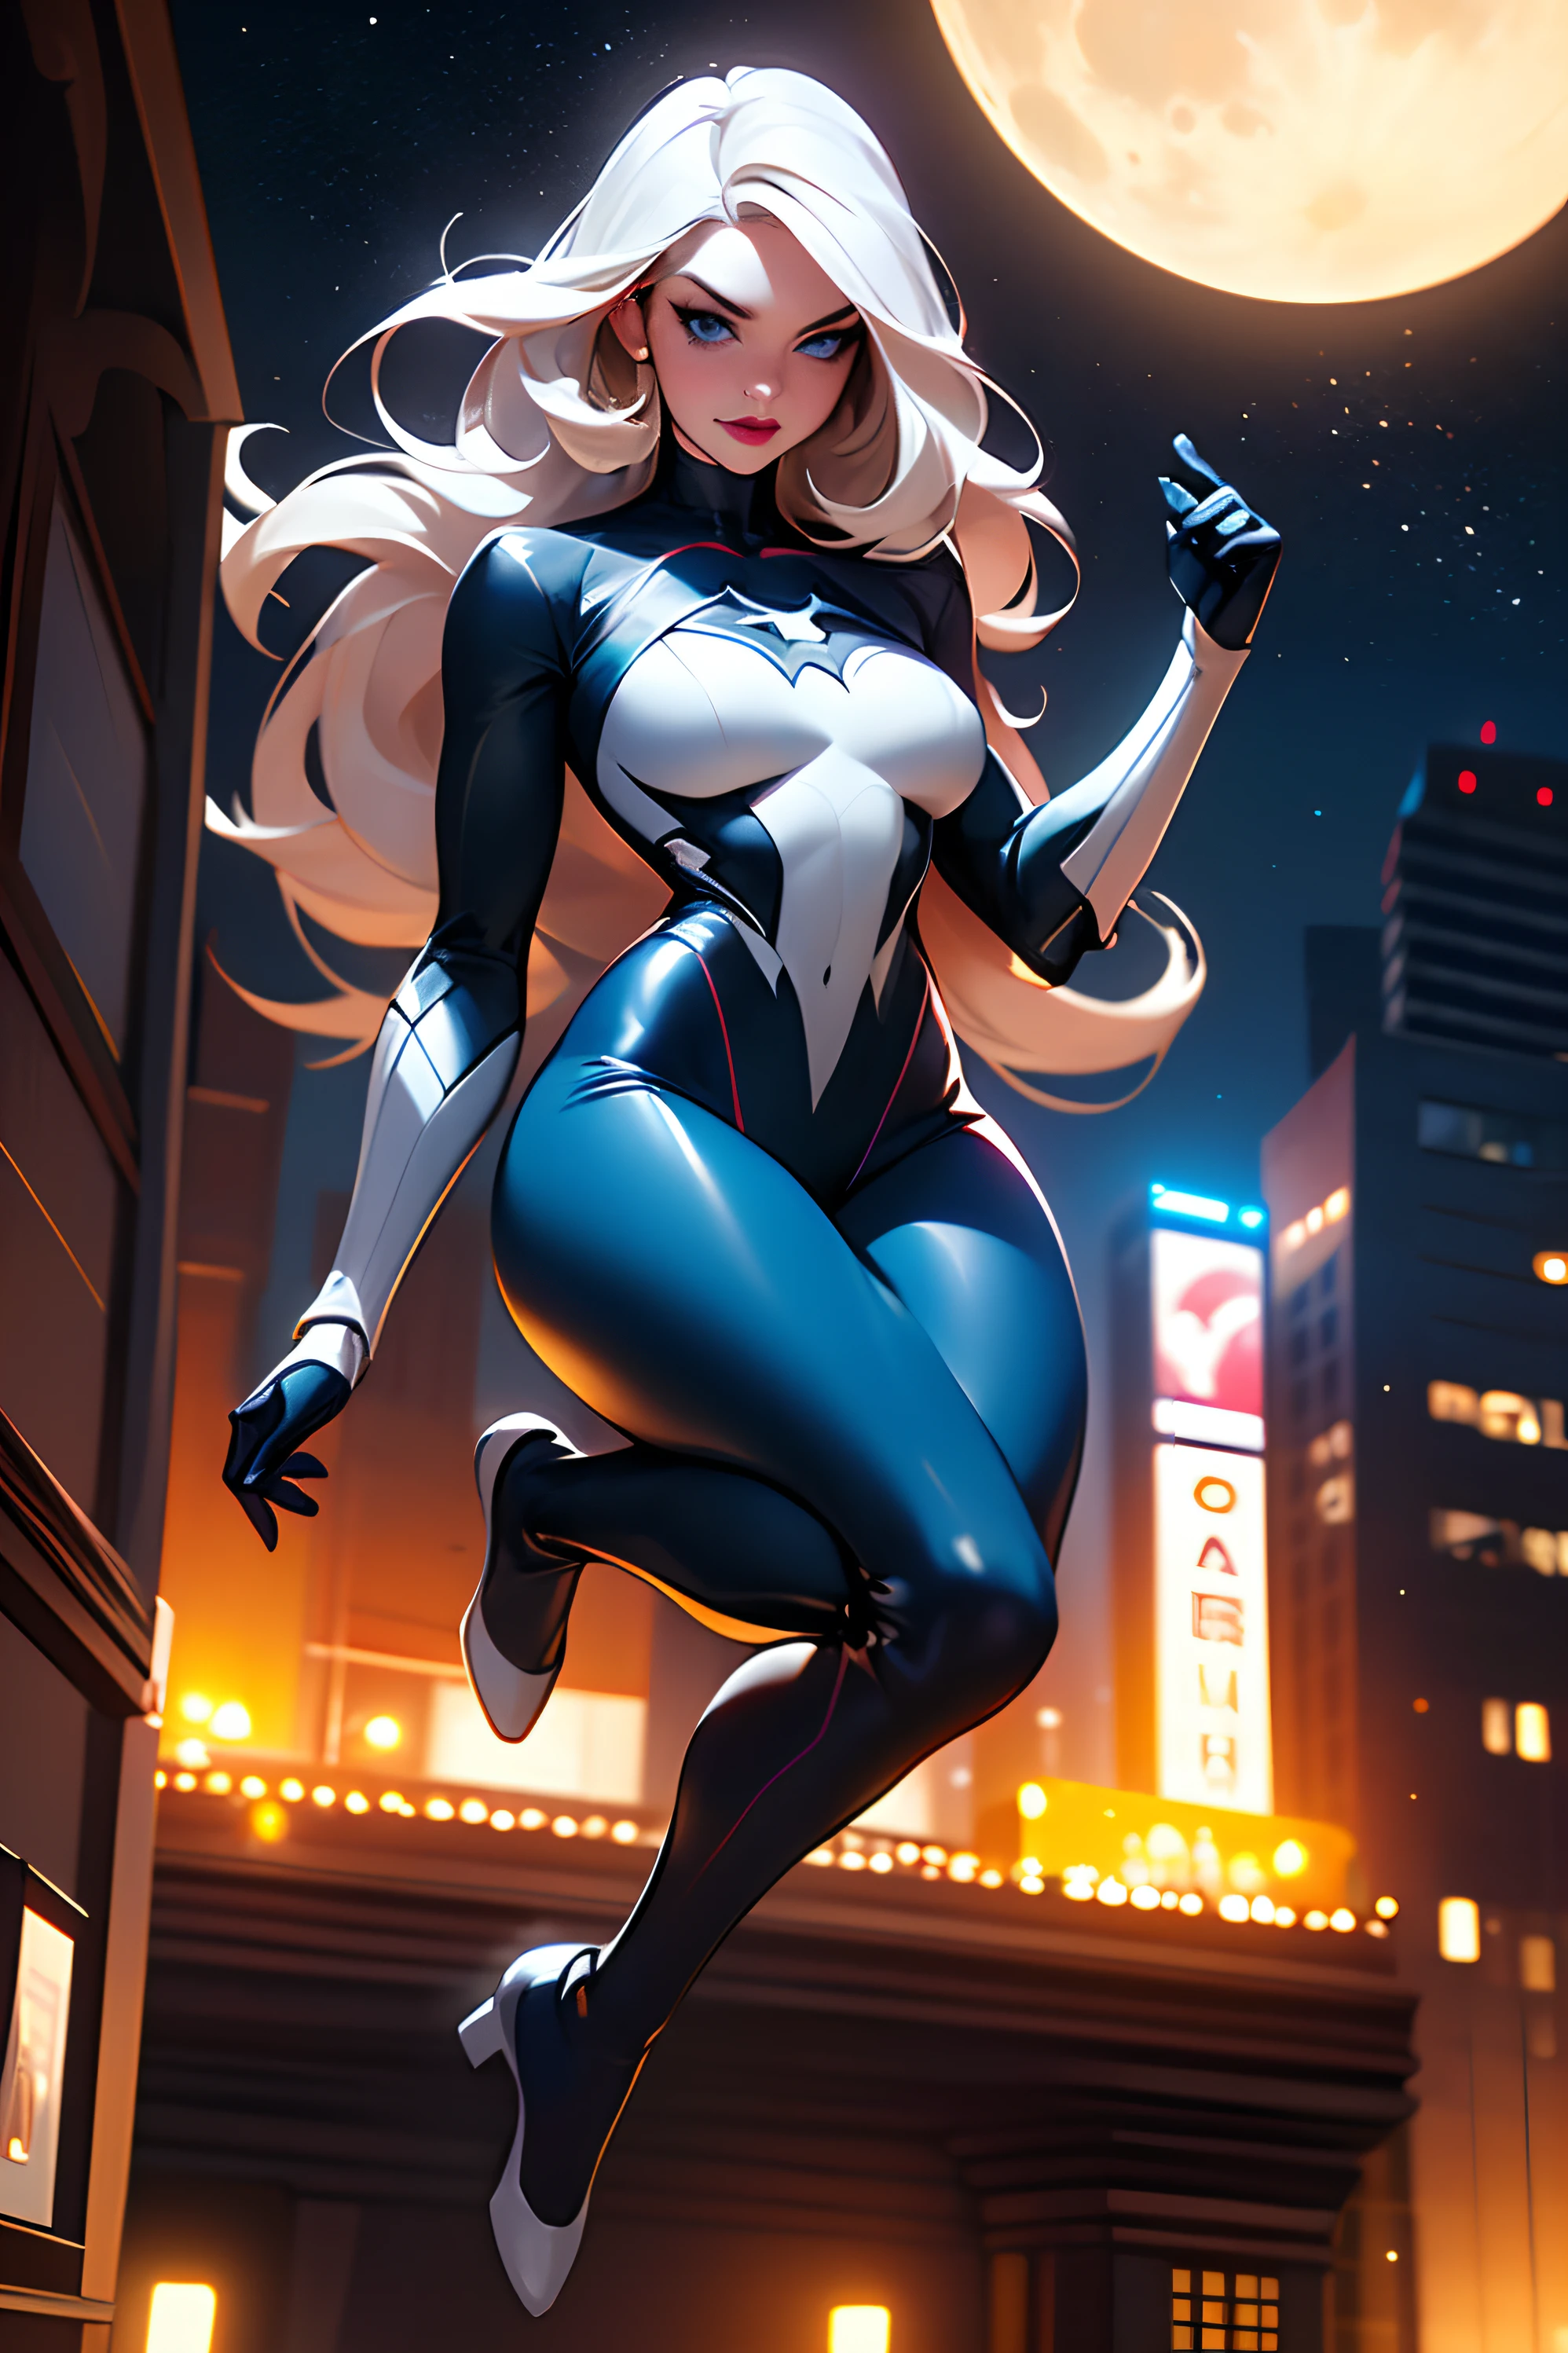 (Meisterwerk, 4K-Auflösung, ultra-realistisch, Sehr detailiert), (Weißes Superheldenthema, charismatisch, Da ist ein Mädchen auf dem Dach der Stadt, trägt Spider-Man-Kostüm, Sie ist eine Superheldin), [ ((Perfektes Gesicht), (perfekte Augen), (langes weißes Haar:1.2), Ganzkörper, (blaue Augen:1.2), ((Spider-Man-Pose),Machtdemonstration, von einem Gebäude zum anderen springen), ((sandige städtische Umgebung):0.8)| (Stadtbild, in der Nacht, Dynamische Lichter), (Vollmond))] # Erläuterung: Der Prompt beschreibt hauptsächlich ein 4K-Gemälde mit ultrahoher Auflösung, sehr realistisch, Sehr detailiert. Es zeigt eine Superheldin an der Spitze der Stadt, trägt ein Spider-Man-Kostüm. Das Thema des Gemäldes ist ein weißes Superheldenthema, the female protagonist has langes weißes Haar, junge Frau, und ihr ganzer Körper ist auf dem Gemälde zu sehen. In Bezug auf die Darstellung der Aktionen von Superheldinnen, Spinnen werden eingesetzt